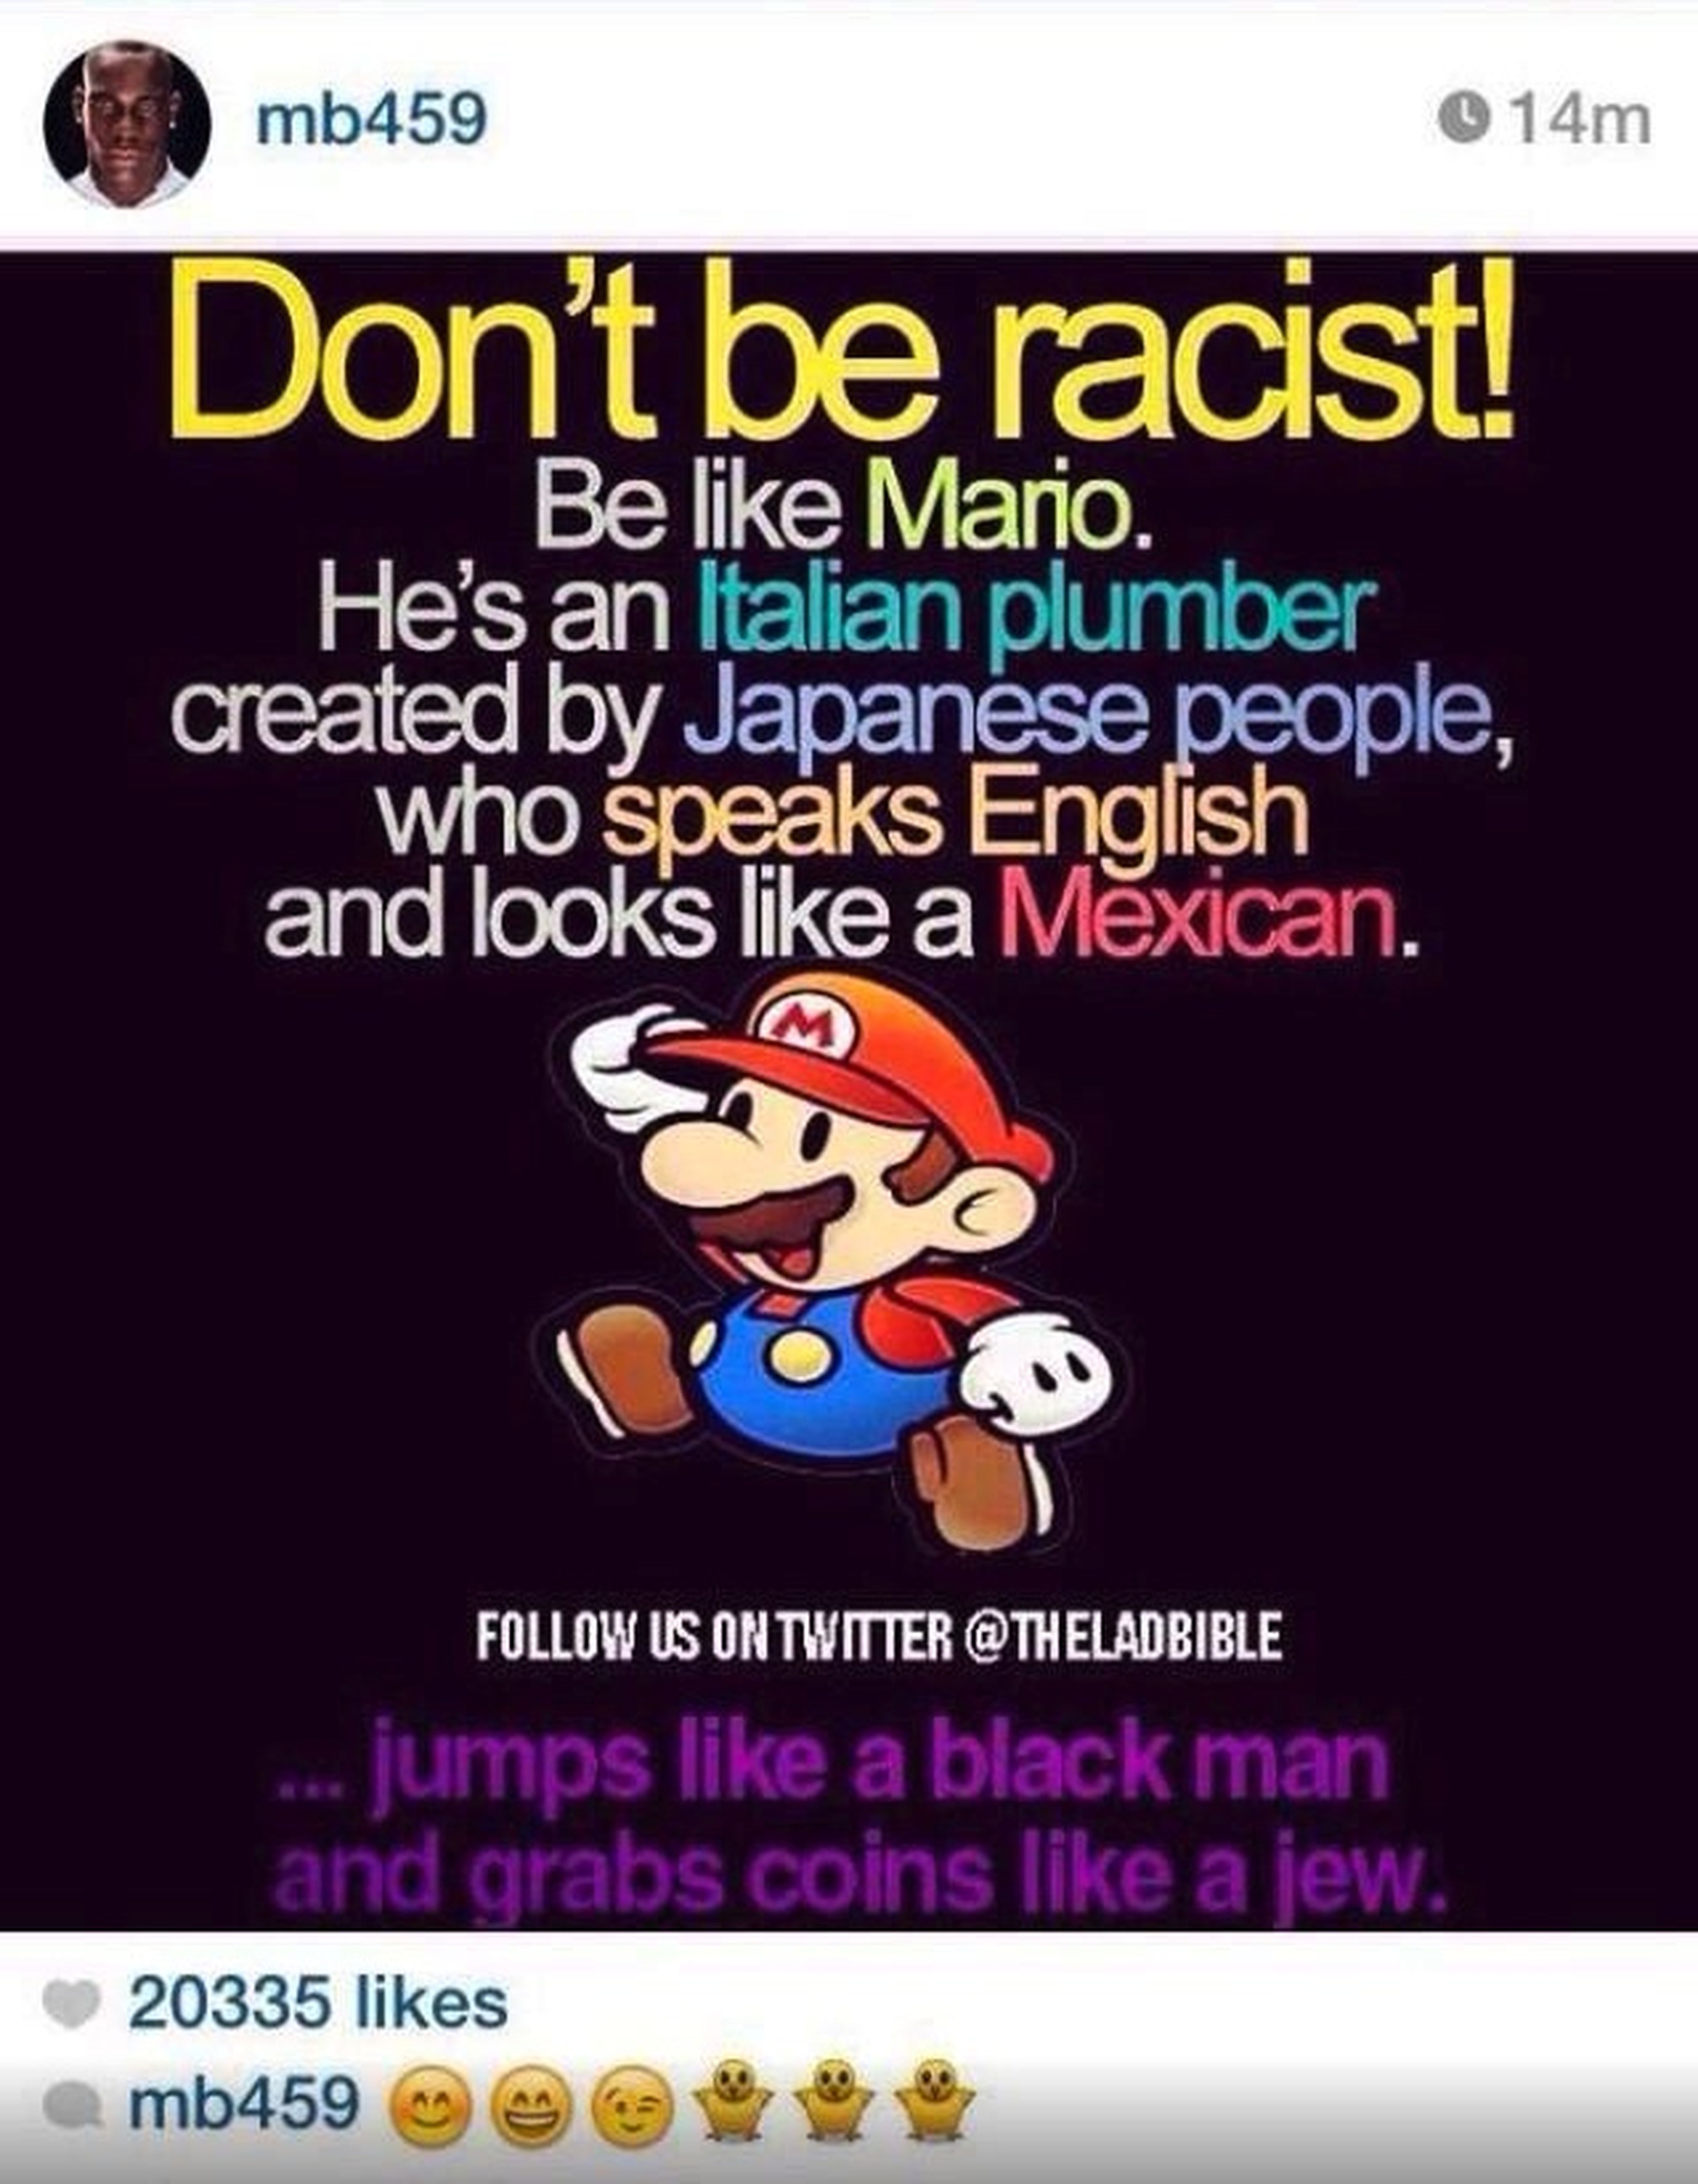 Balotelli incendia las redes con una imagen "racista" de Super Mario